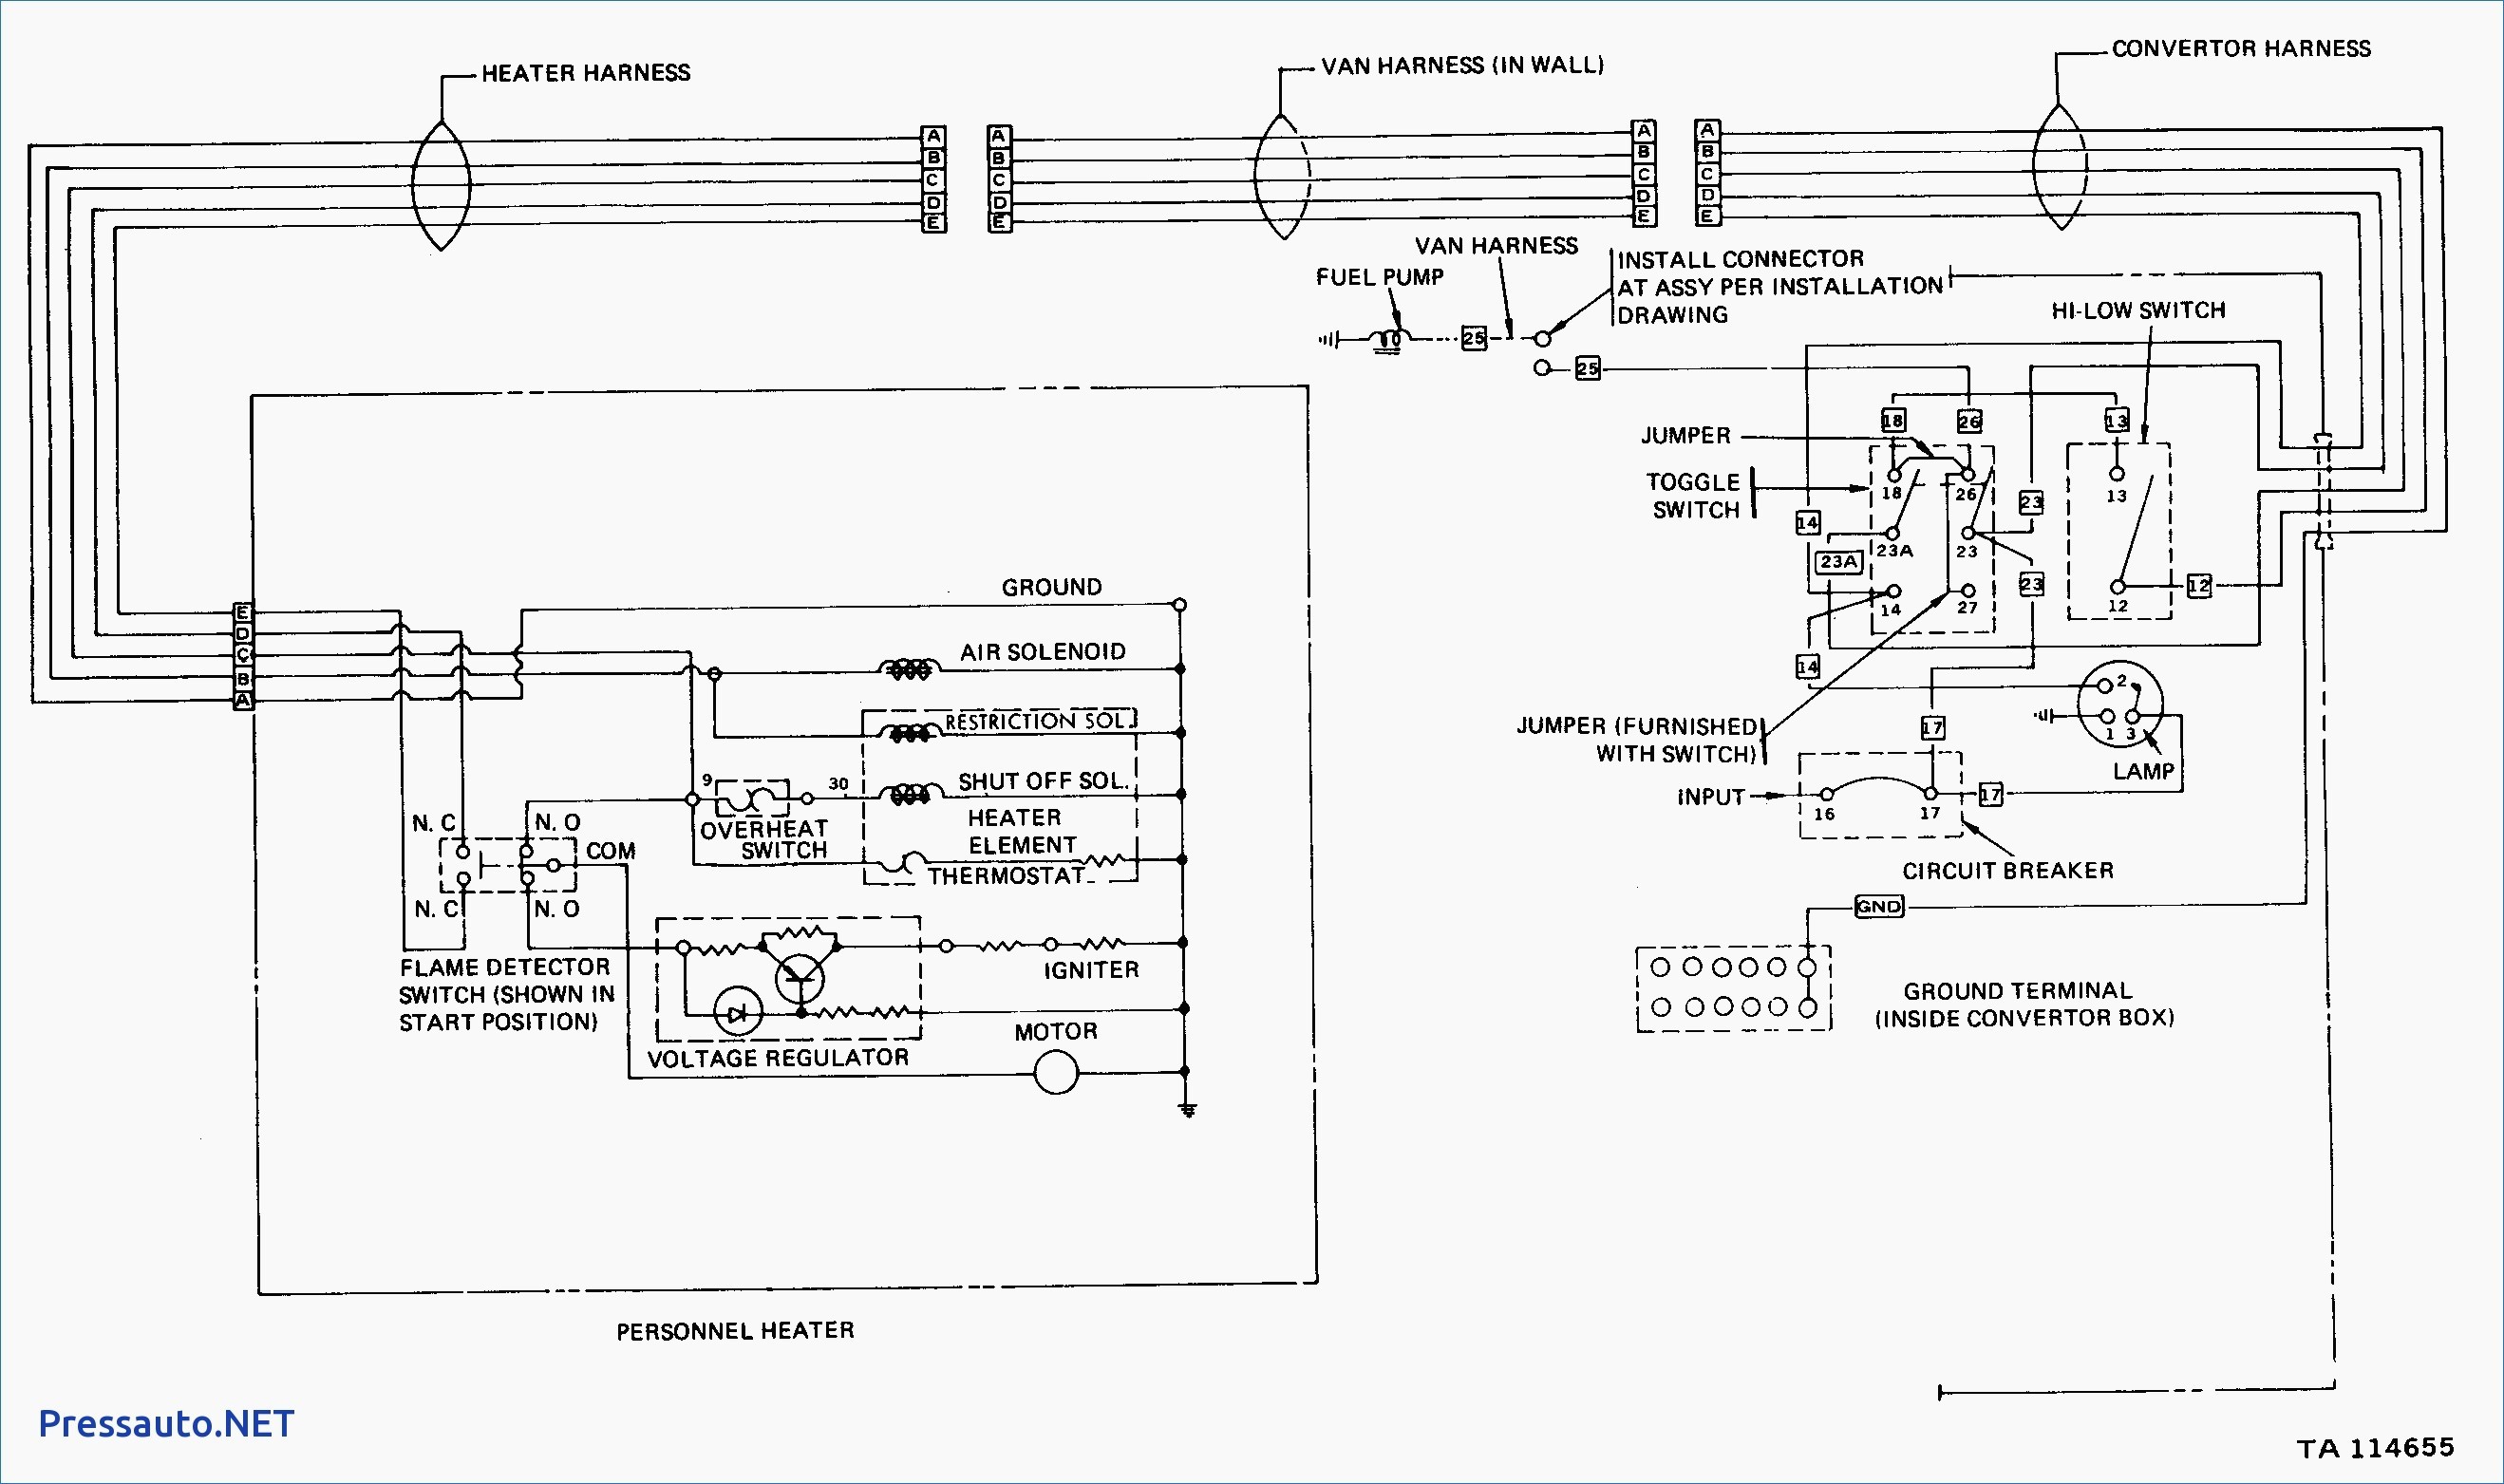 Bulldog Wiring Diagram Free Downloads Beautiful Bulldog Security Wiring Diagram Inspiration Best